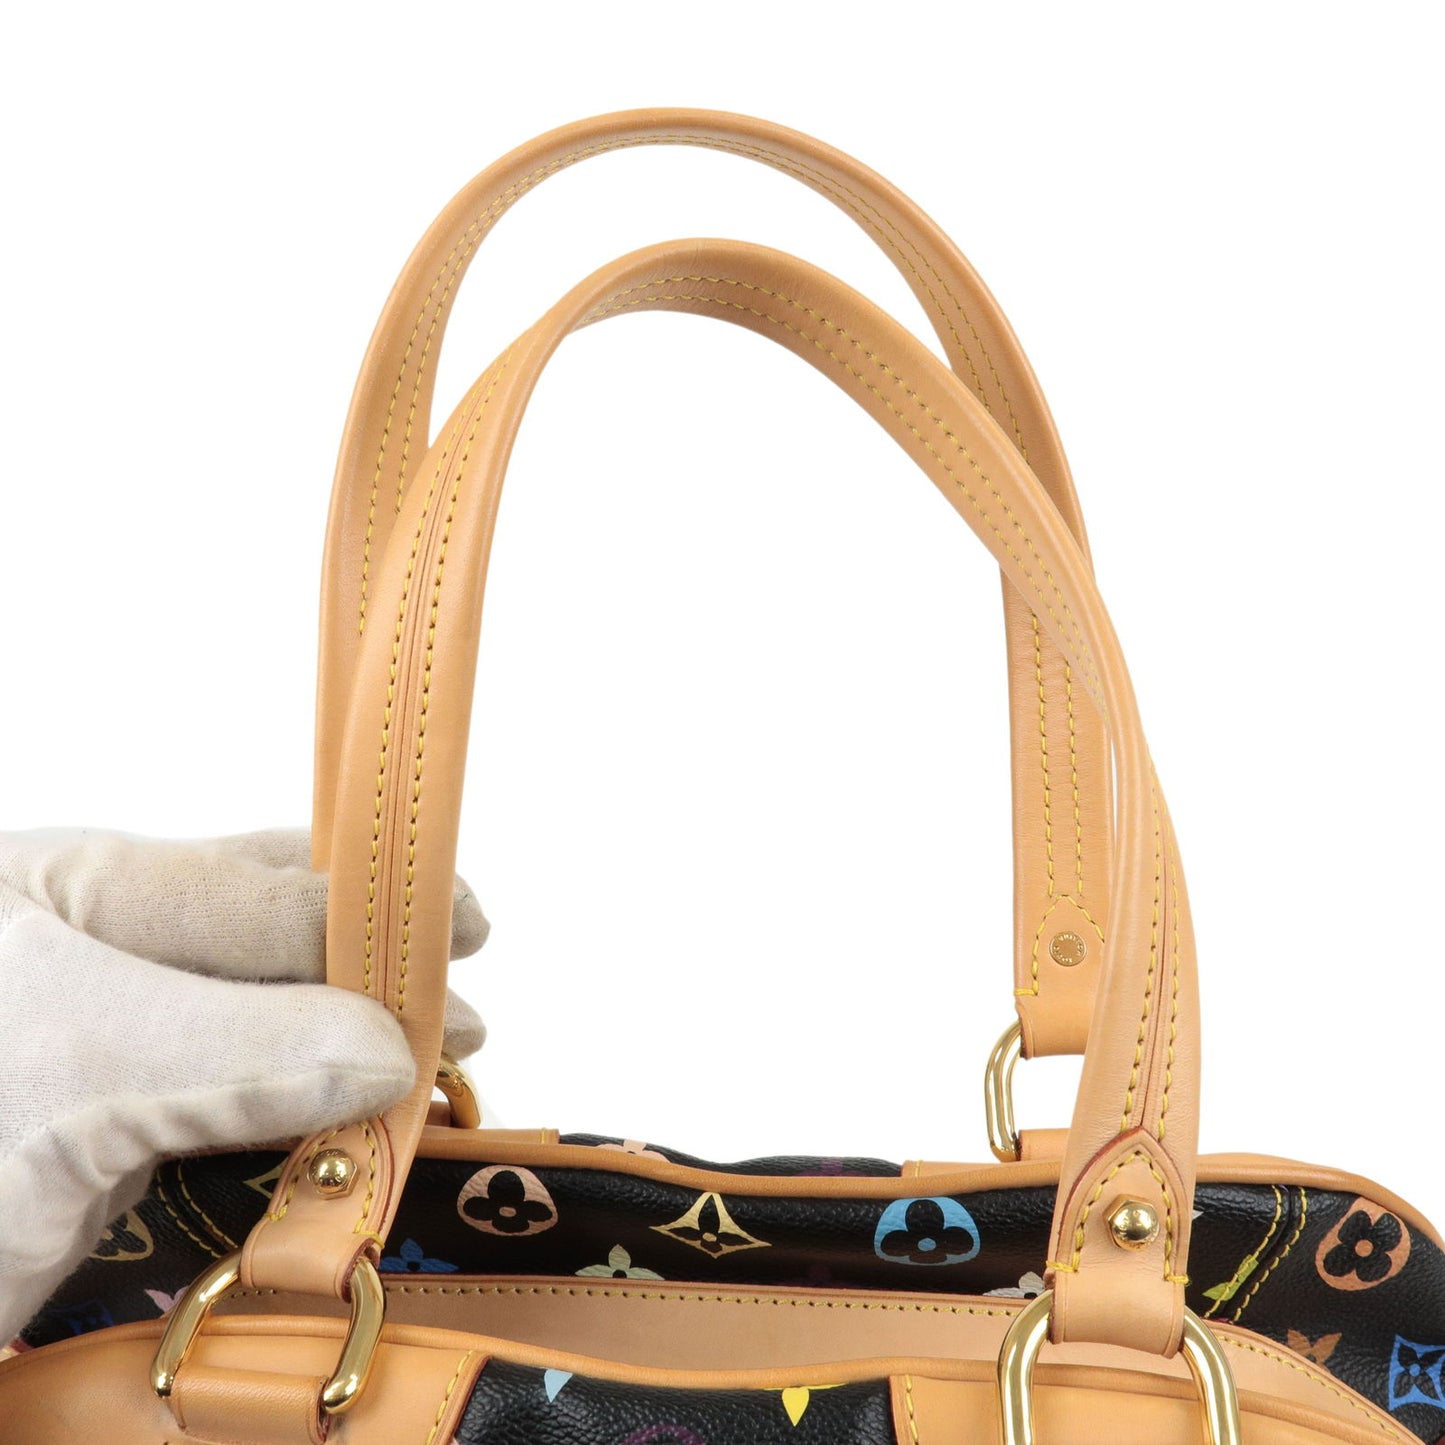 Louis Vuitton Monogram Multi Color Claudia Hand Bag M40194